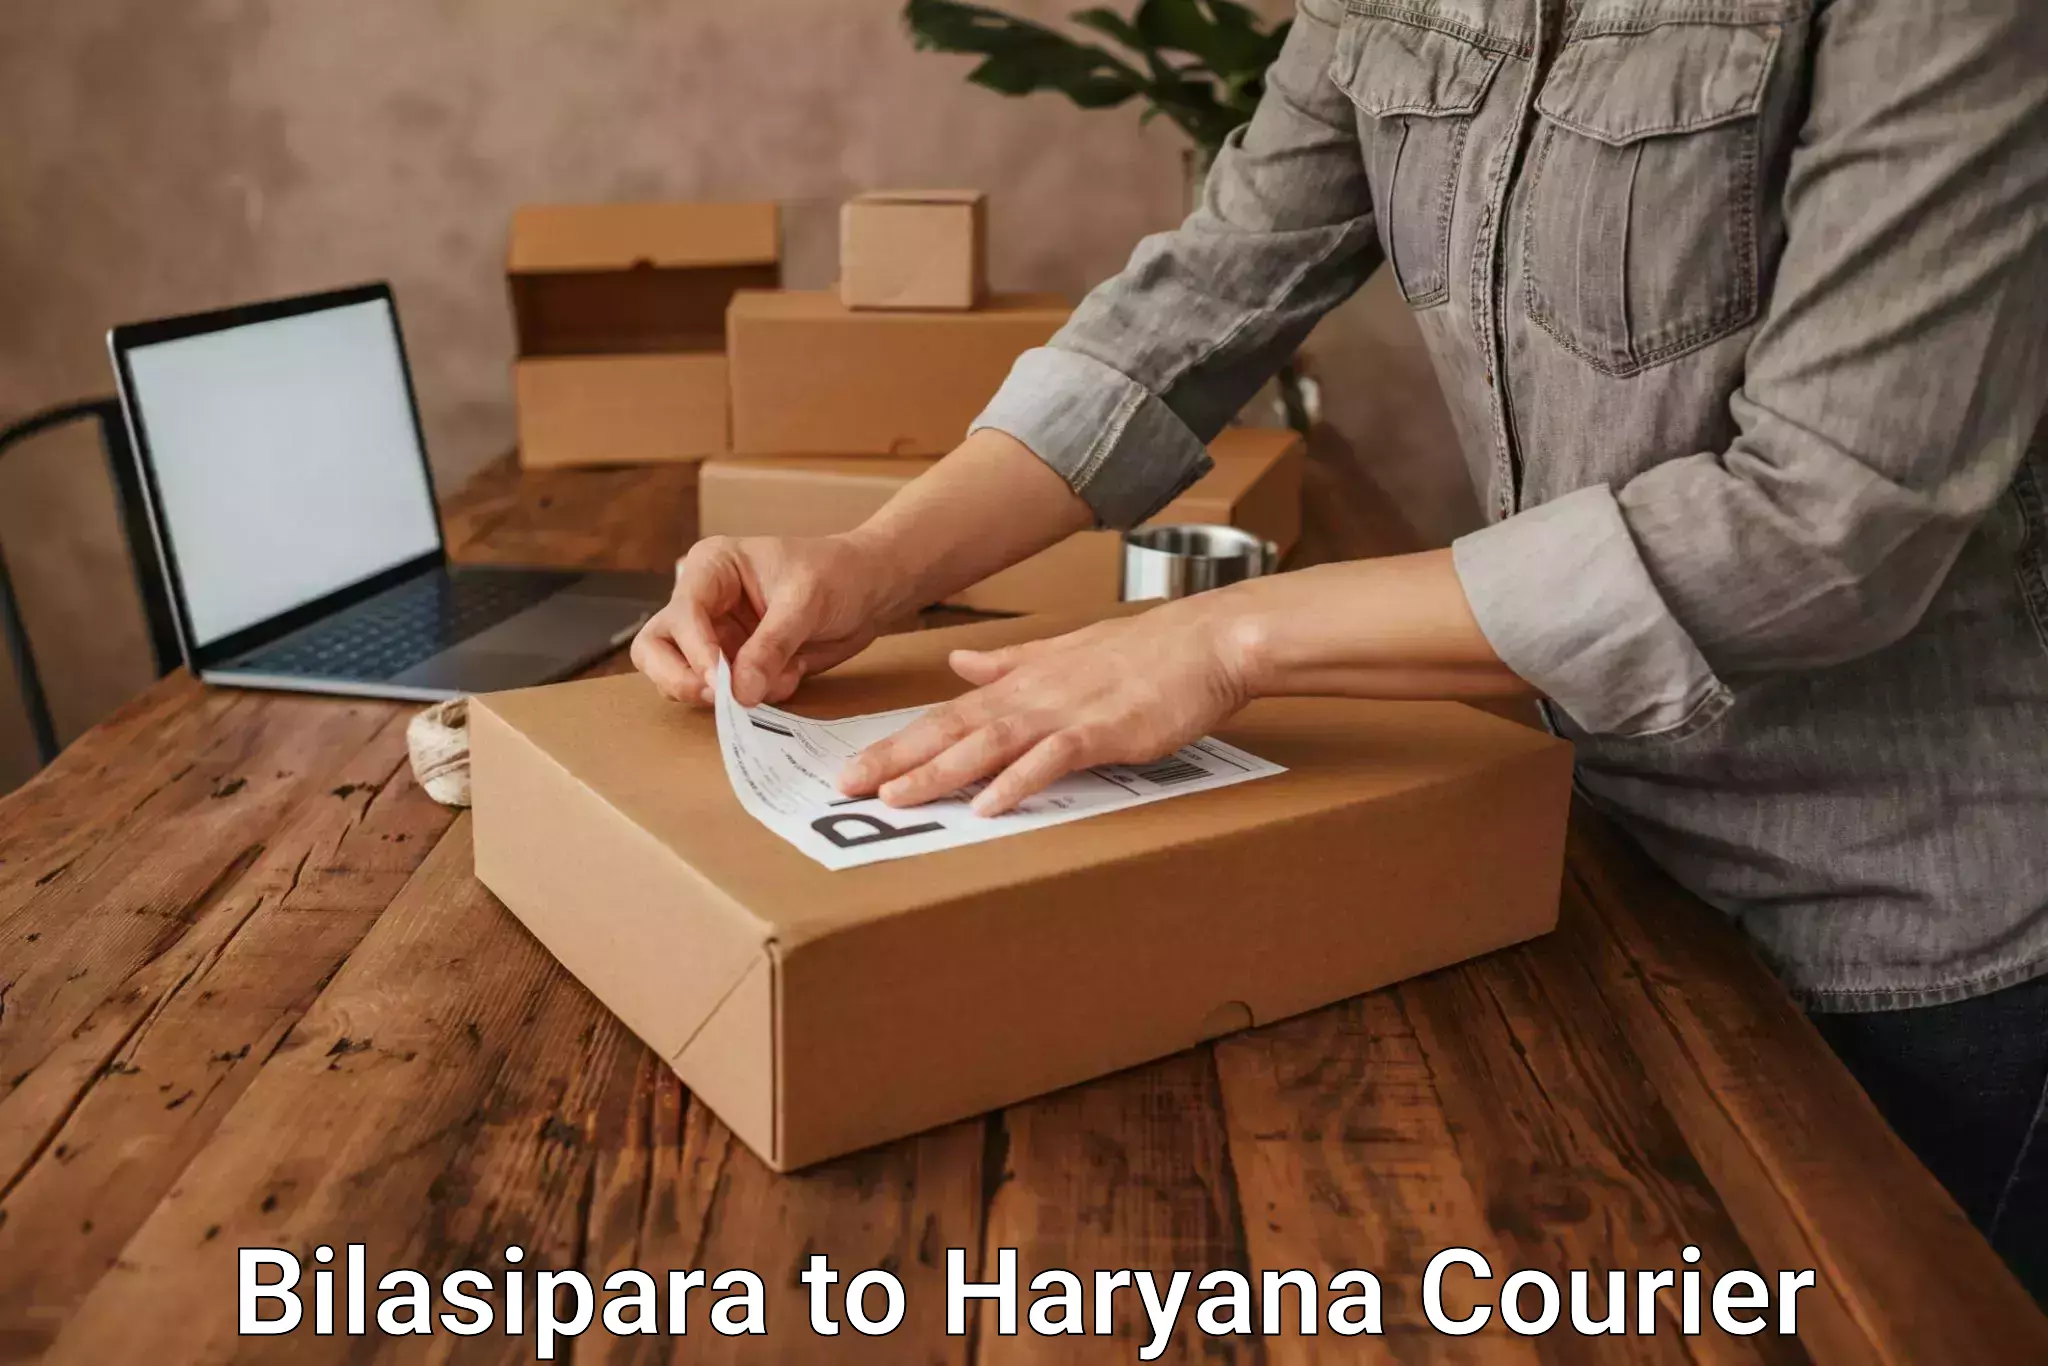 Comprehensive parcel tracking Bilasipara to Dharuhera